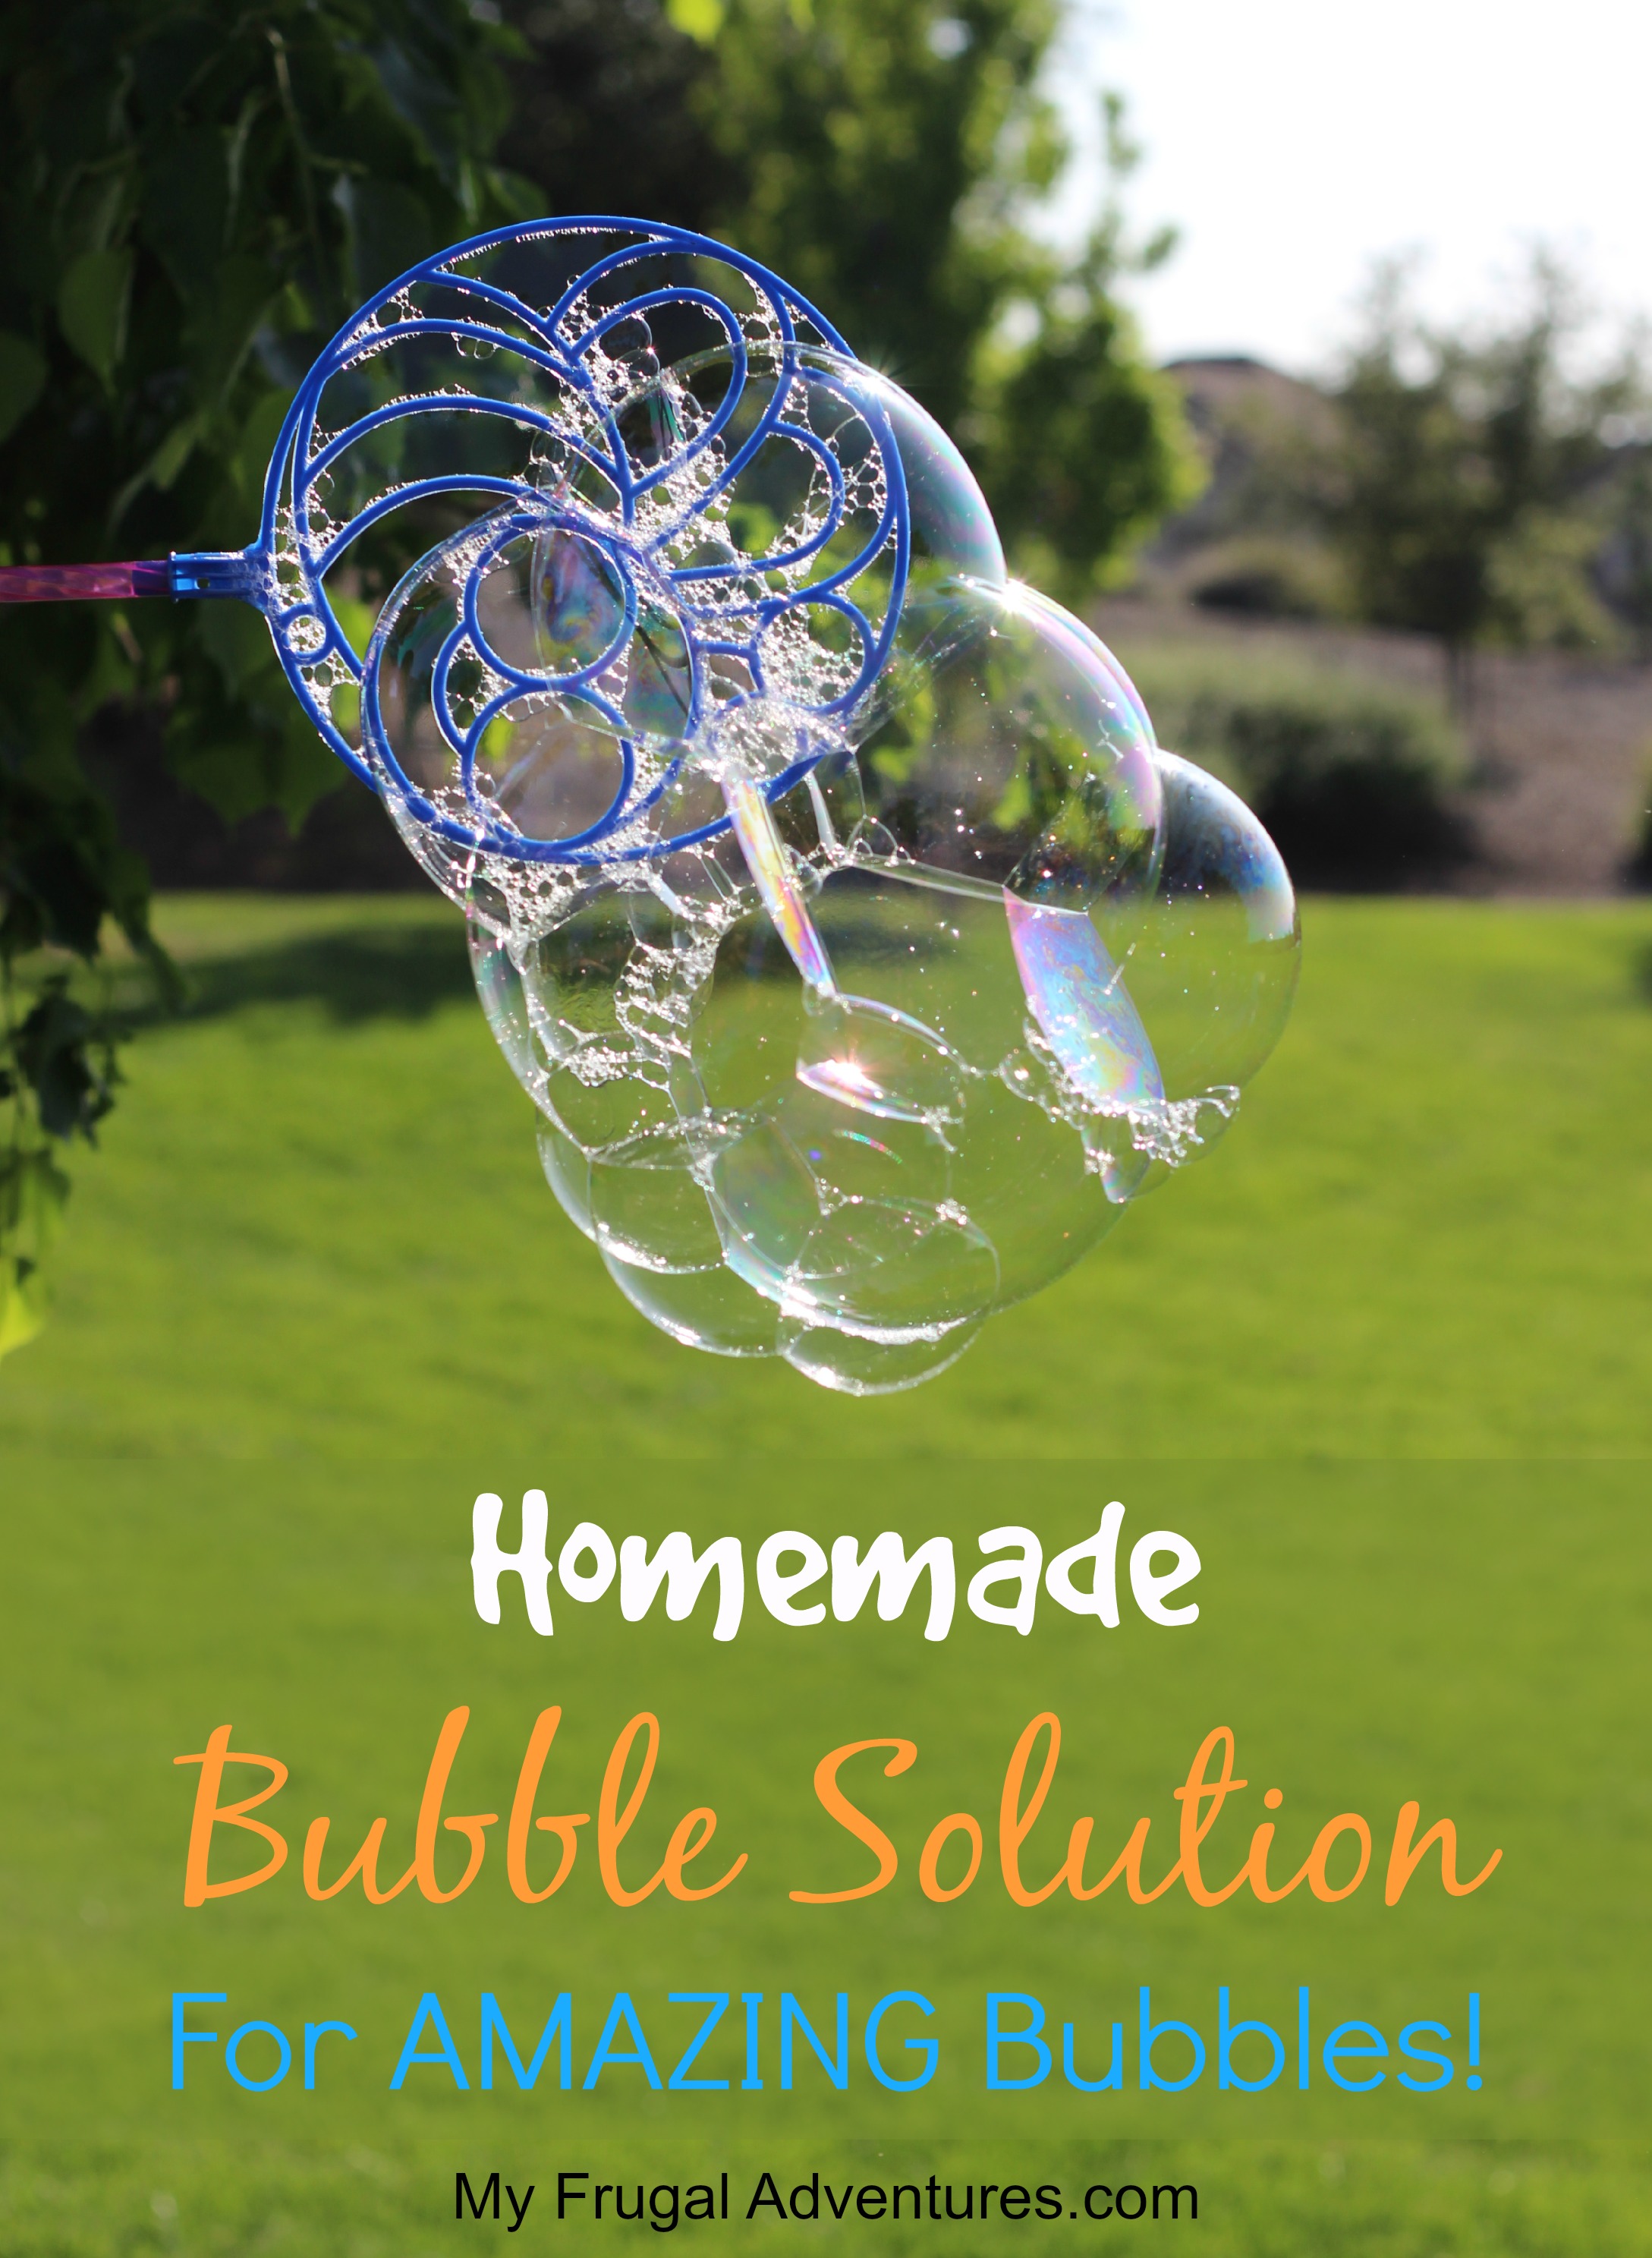 Soap Bubbles - Soap Bubble Recipe - Blow Biggest Bubble